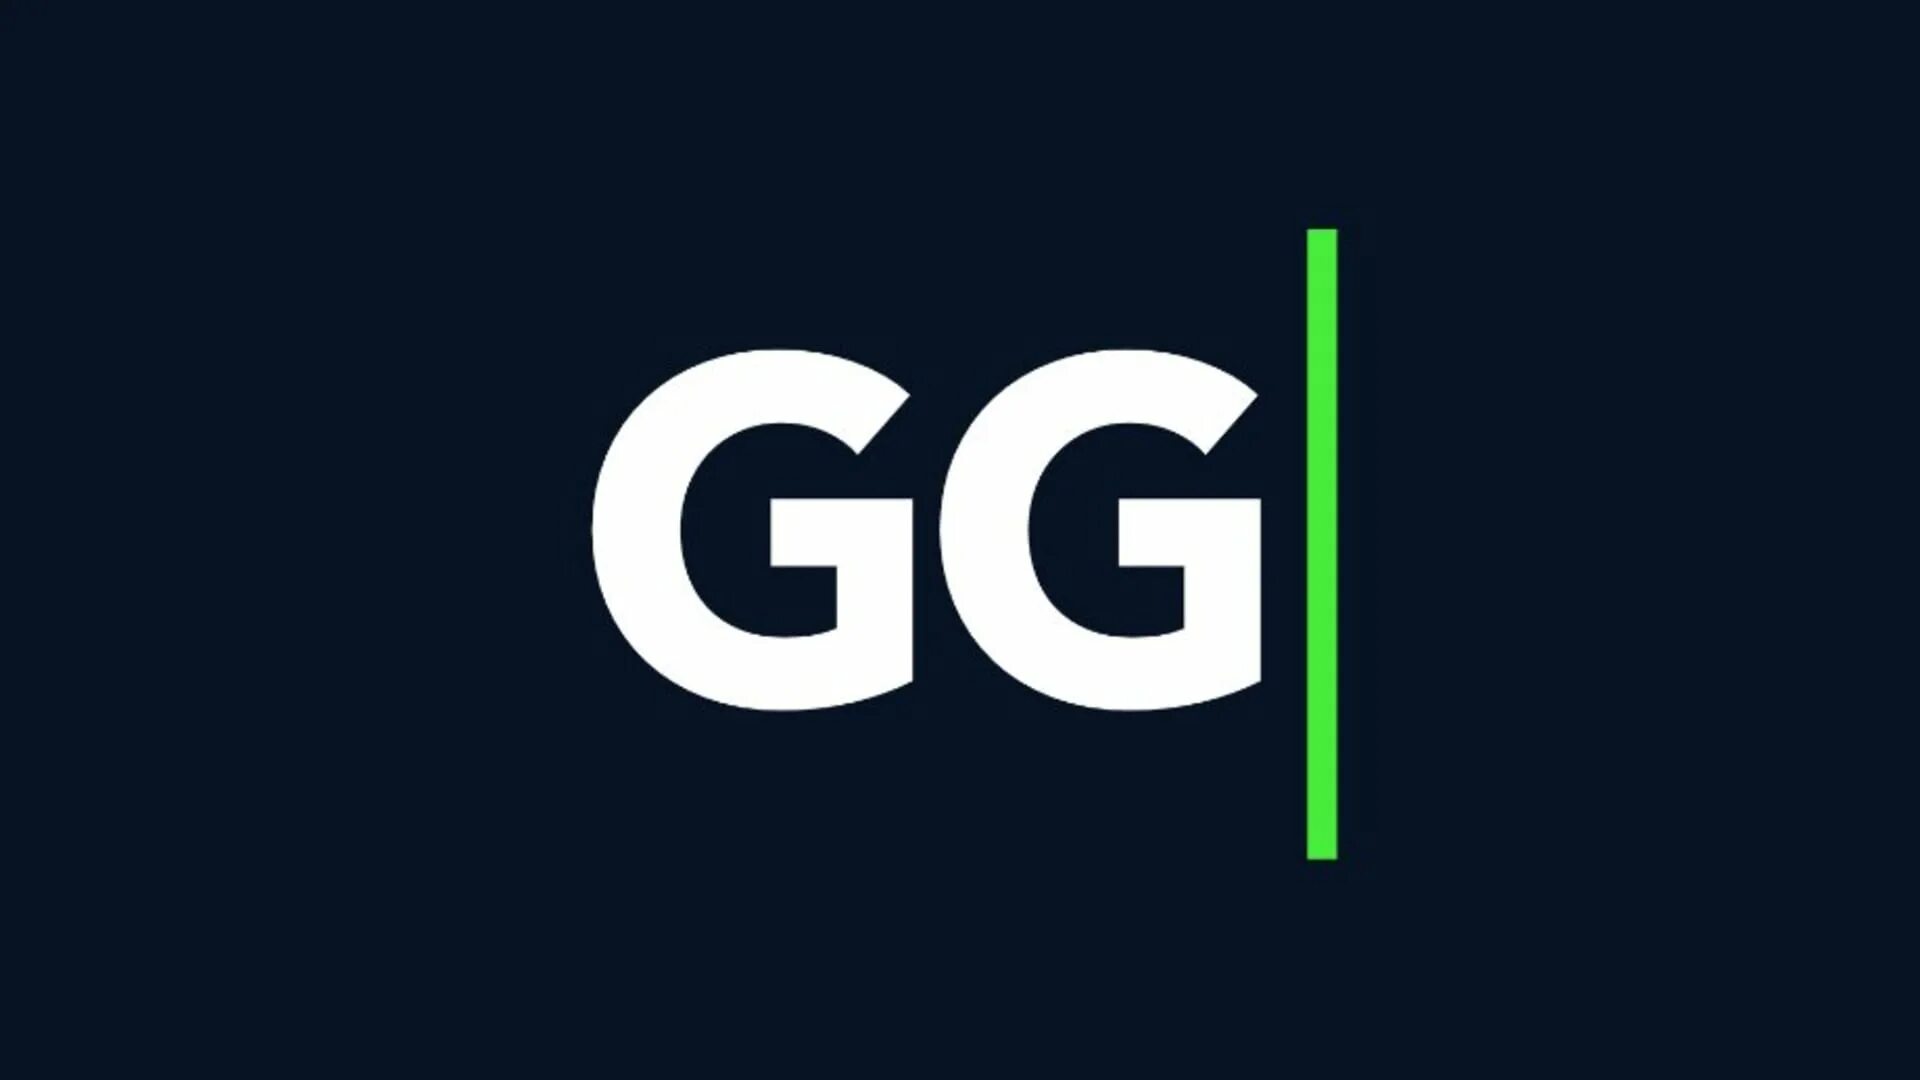 Фото gg. Надпись gg. Фото с надписью gg. Gg good game. Good games com